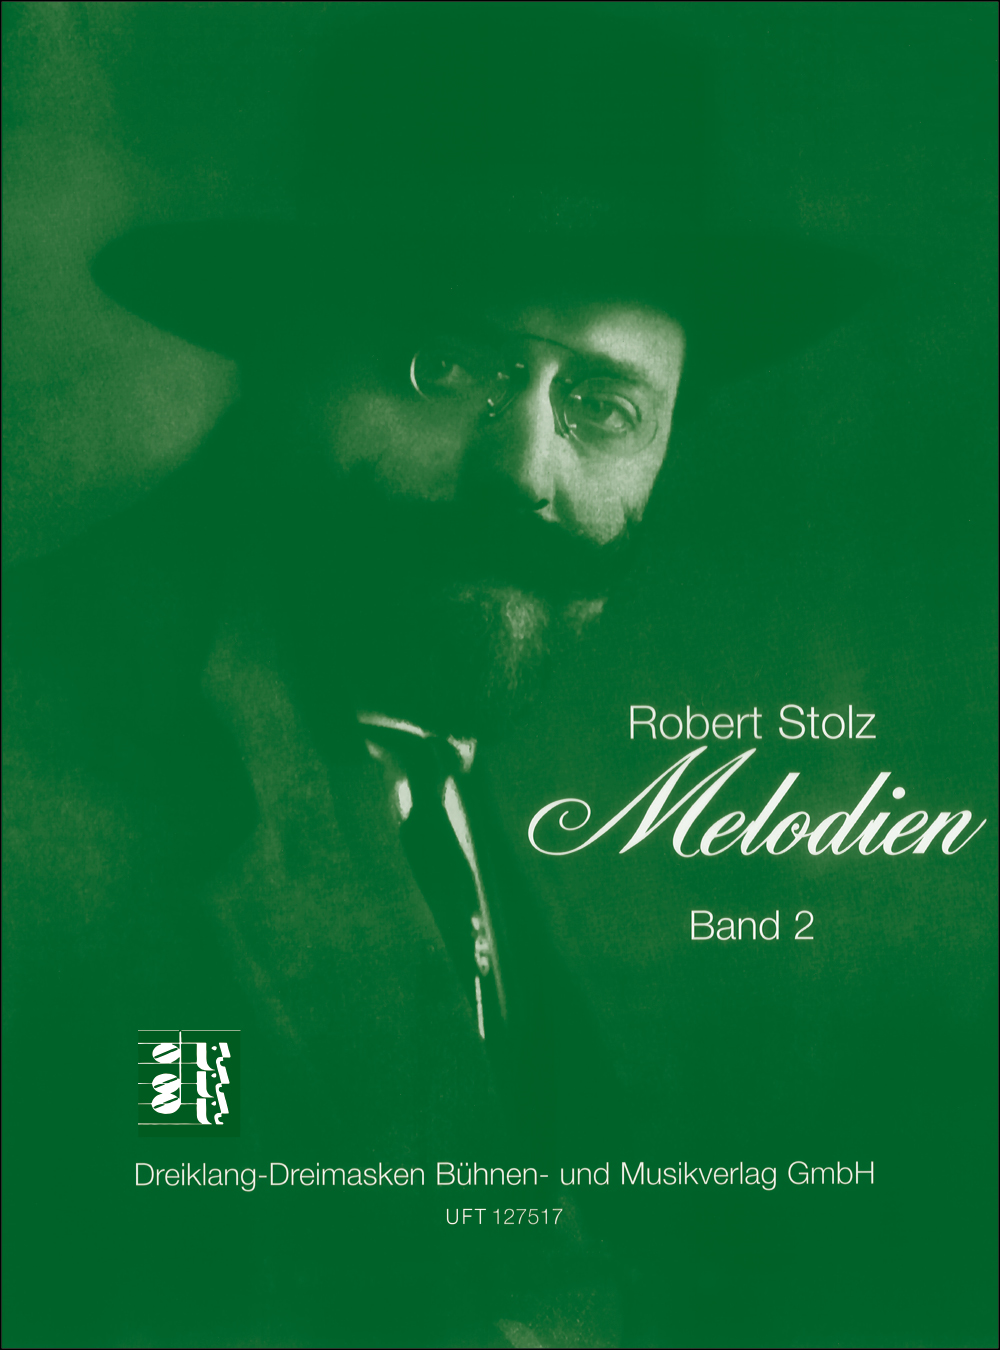 Robert Stolz: Robert-Stolz-Melodien  Bd. 2: Vocal & Piano: Vocal Work